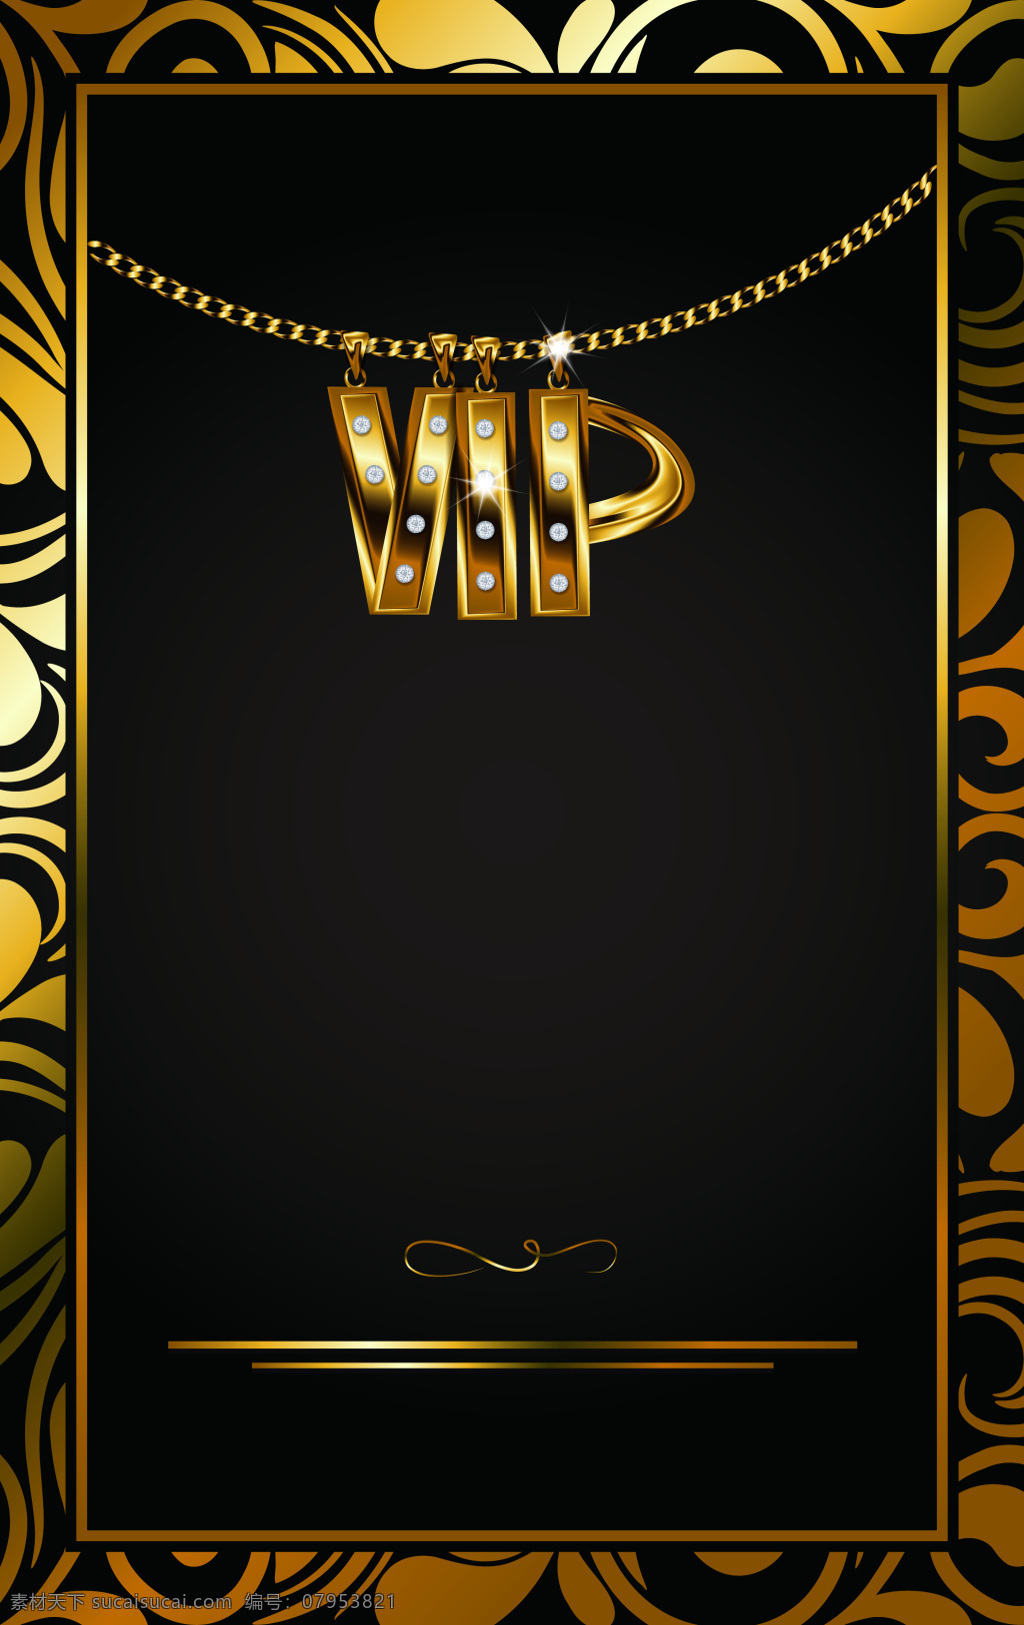 欧式 花纹 边框 金色 vip 卡片 模板 欧式边框 抽象背景 串珠 闪光 金色vip 卡片设计 矢量名片 背景设计 商务风格